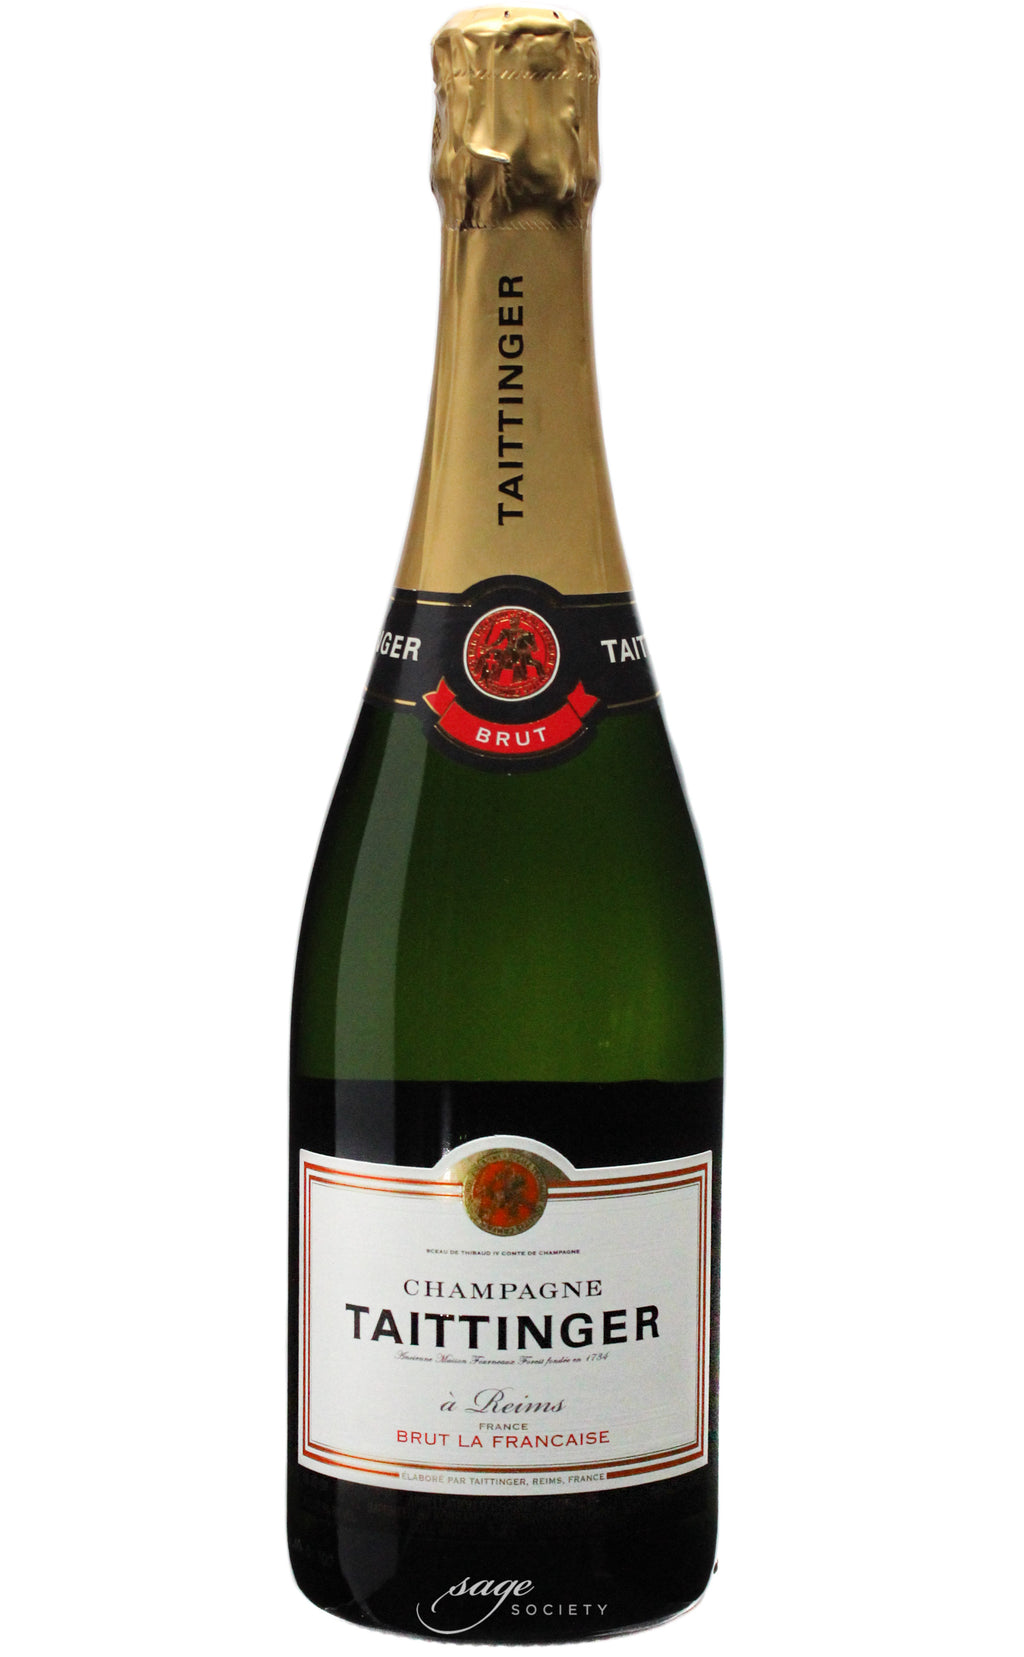 NV Taittinger Champagne Brut Réserve La Française – Sage Society